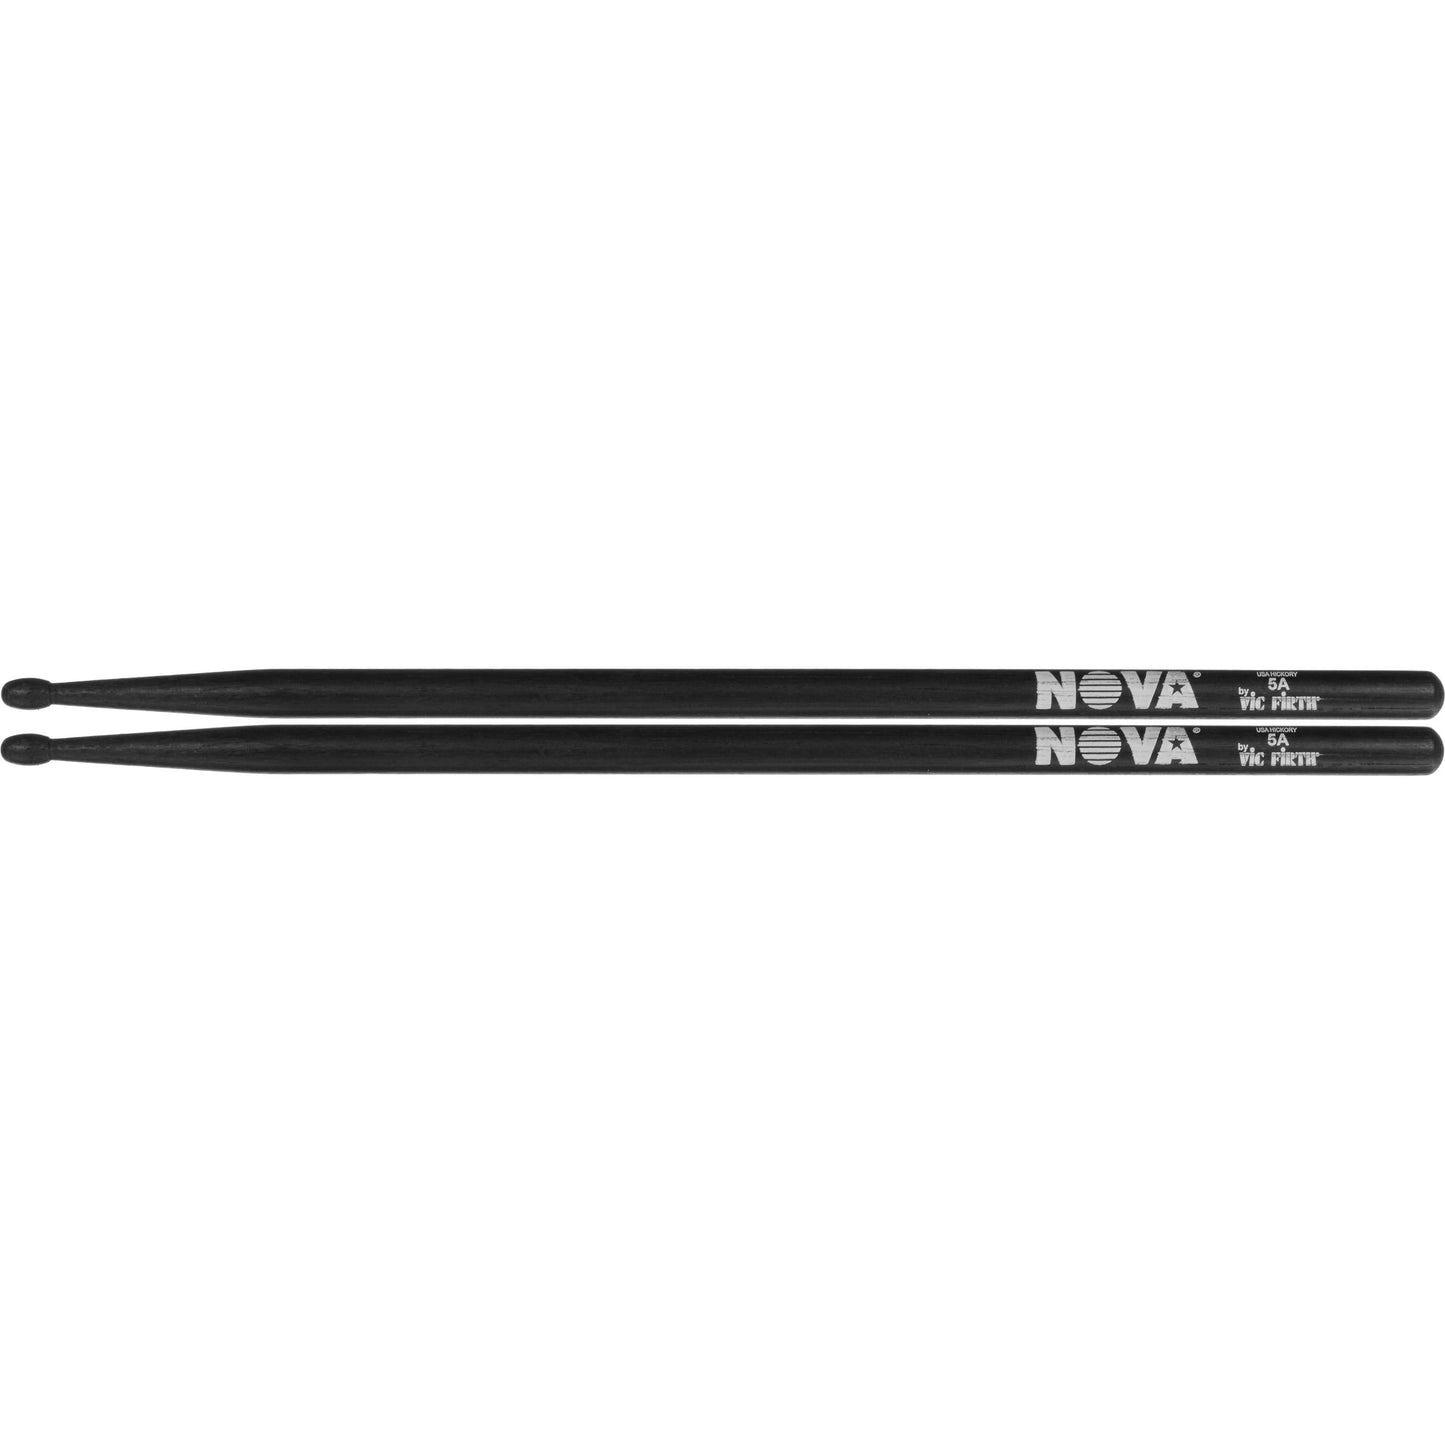 Vic Firth Nova Hickory Black 5A Drumsticks - Wooden Tip - N5AB